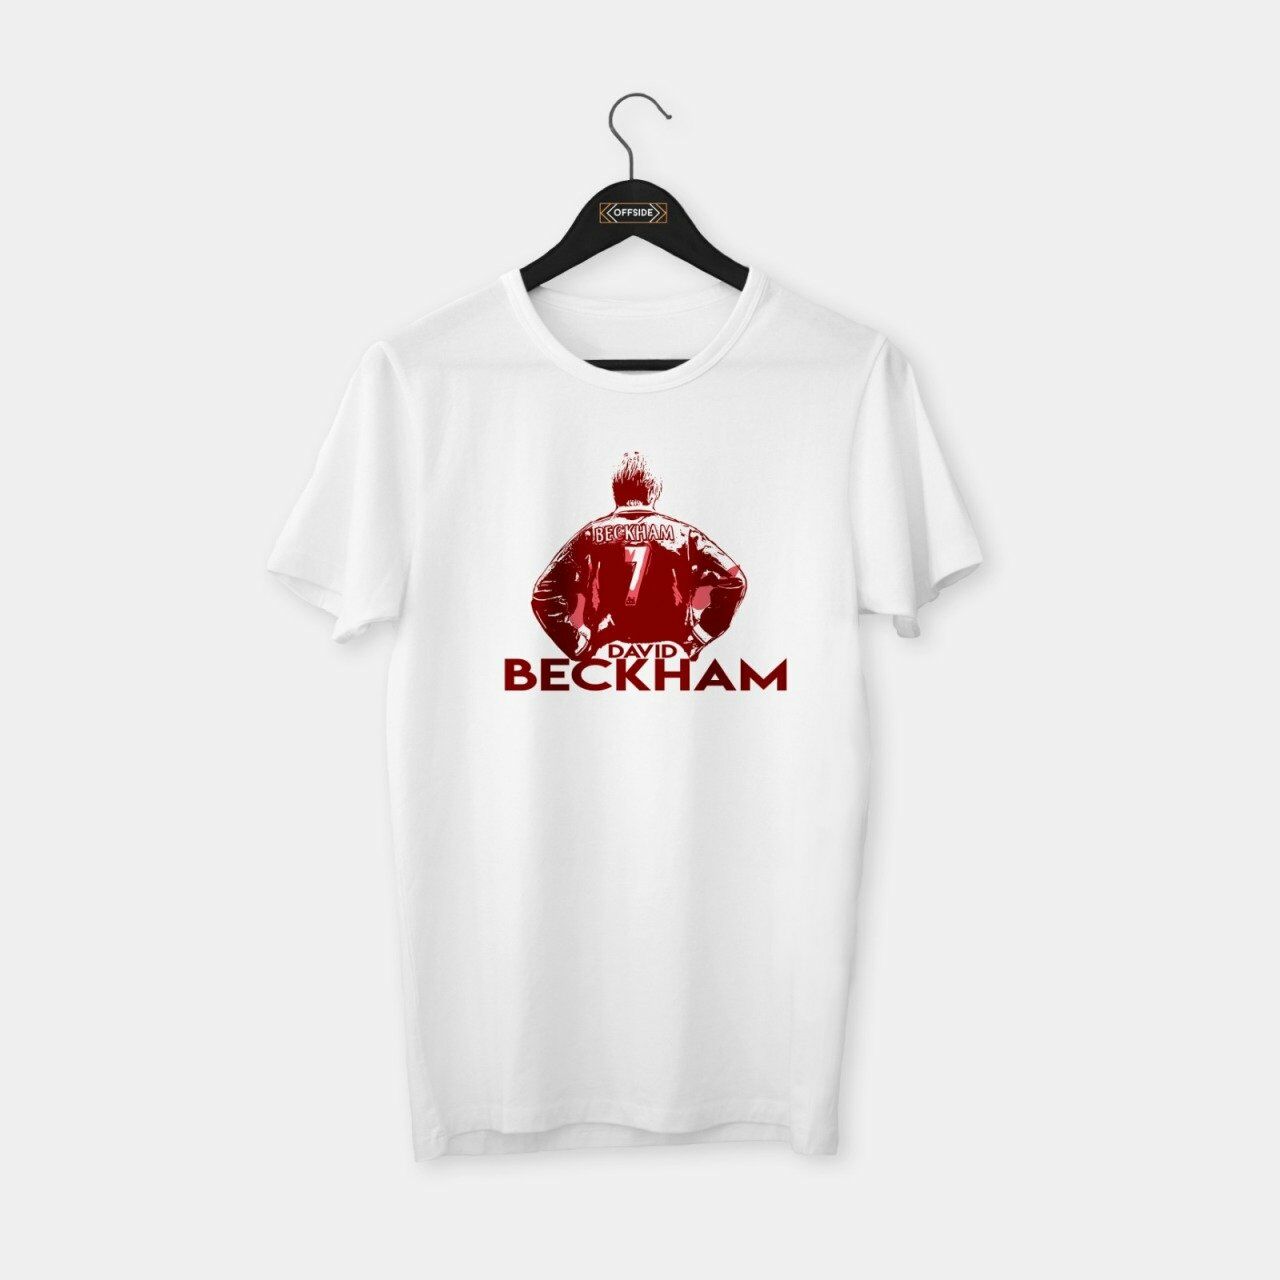 Beckham II T-shirt